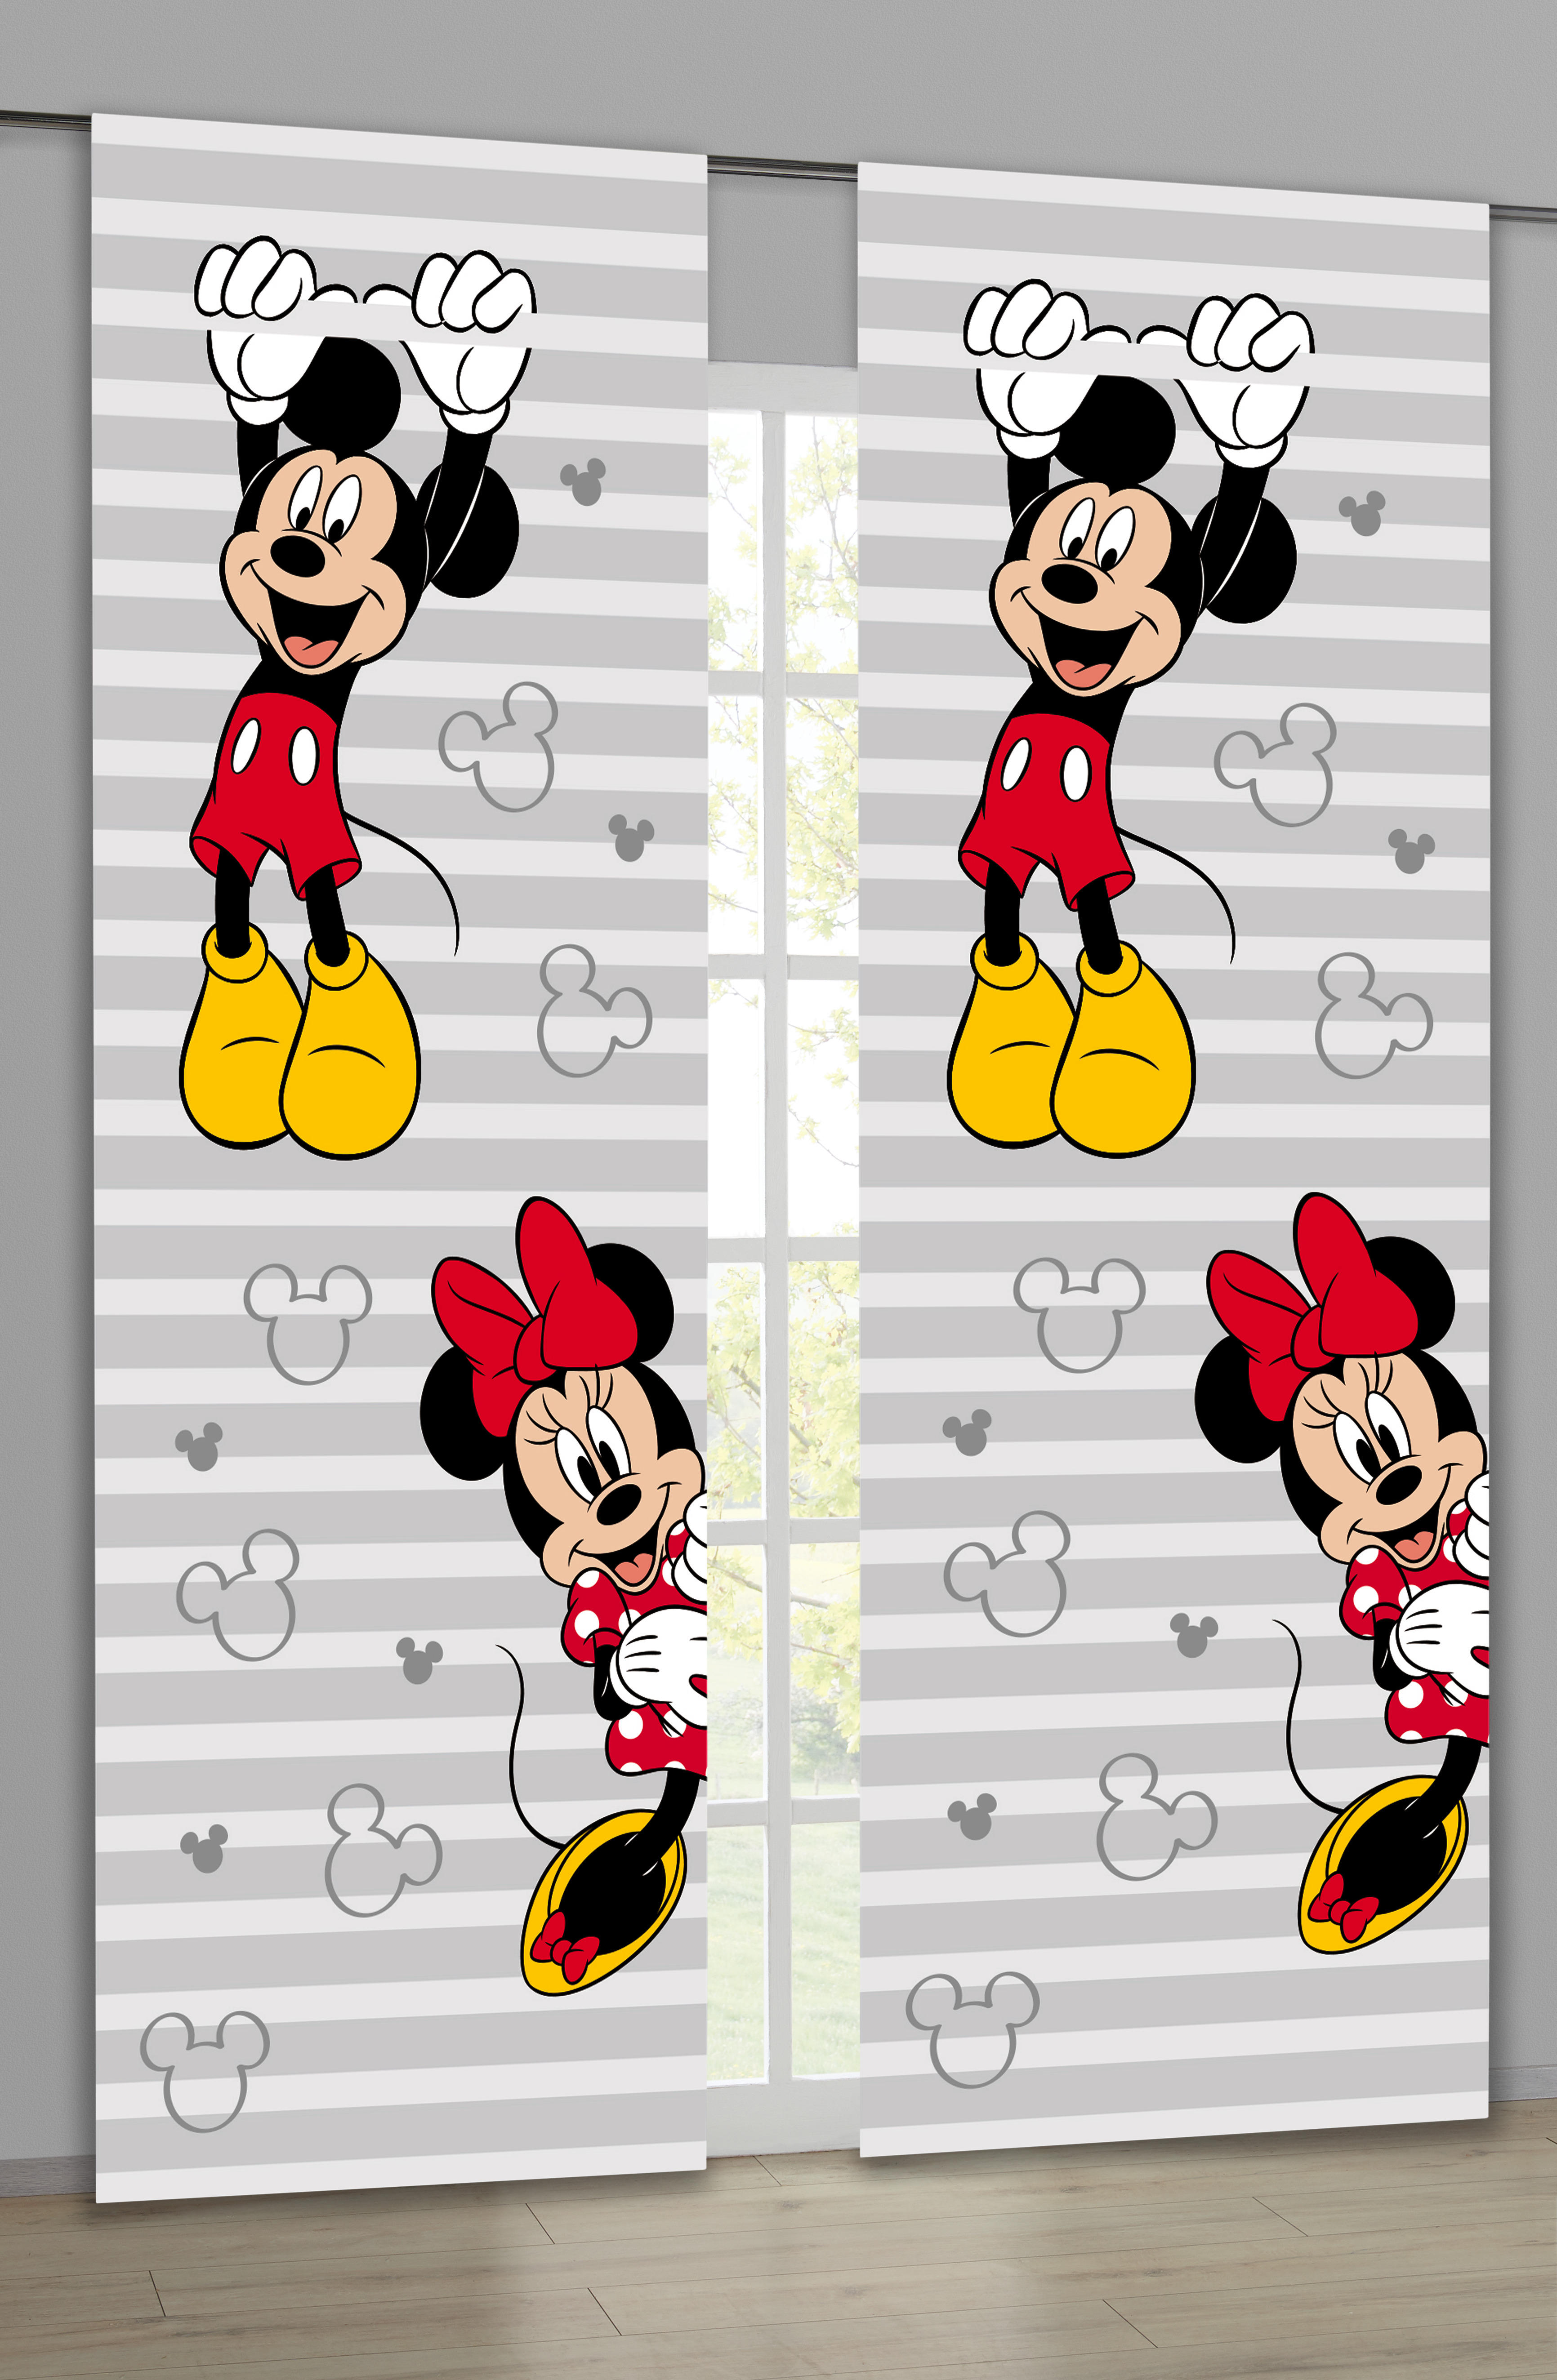 Schiebevorhang Lizenz-druck Mickey+minnie Grau B/l: Ca. 60x175 Cm Mickey+minnie - rot/grau (60,00/175,00cm)